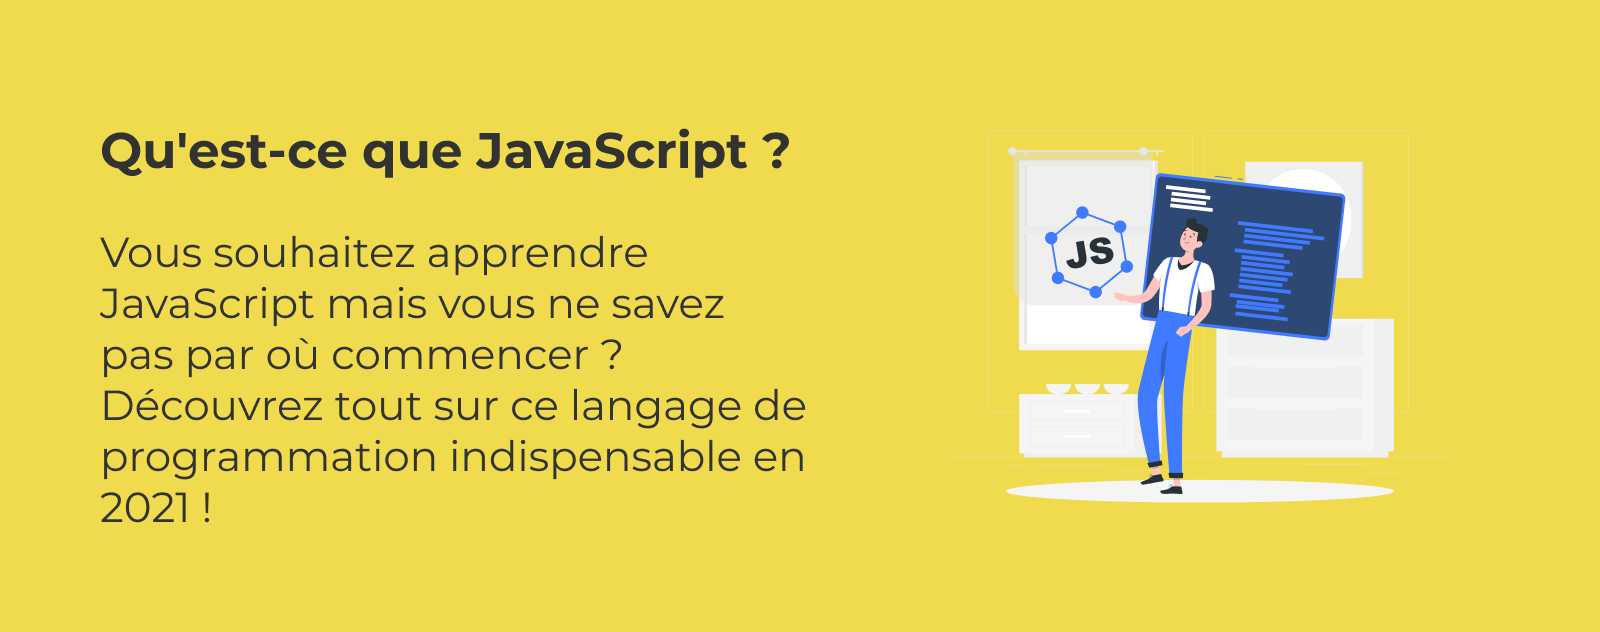 Qu'est-ce que le JavaScript ?